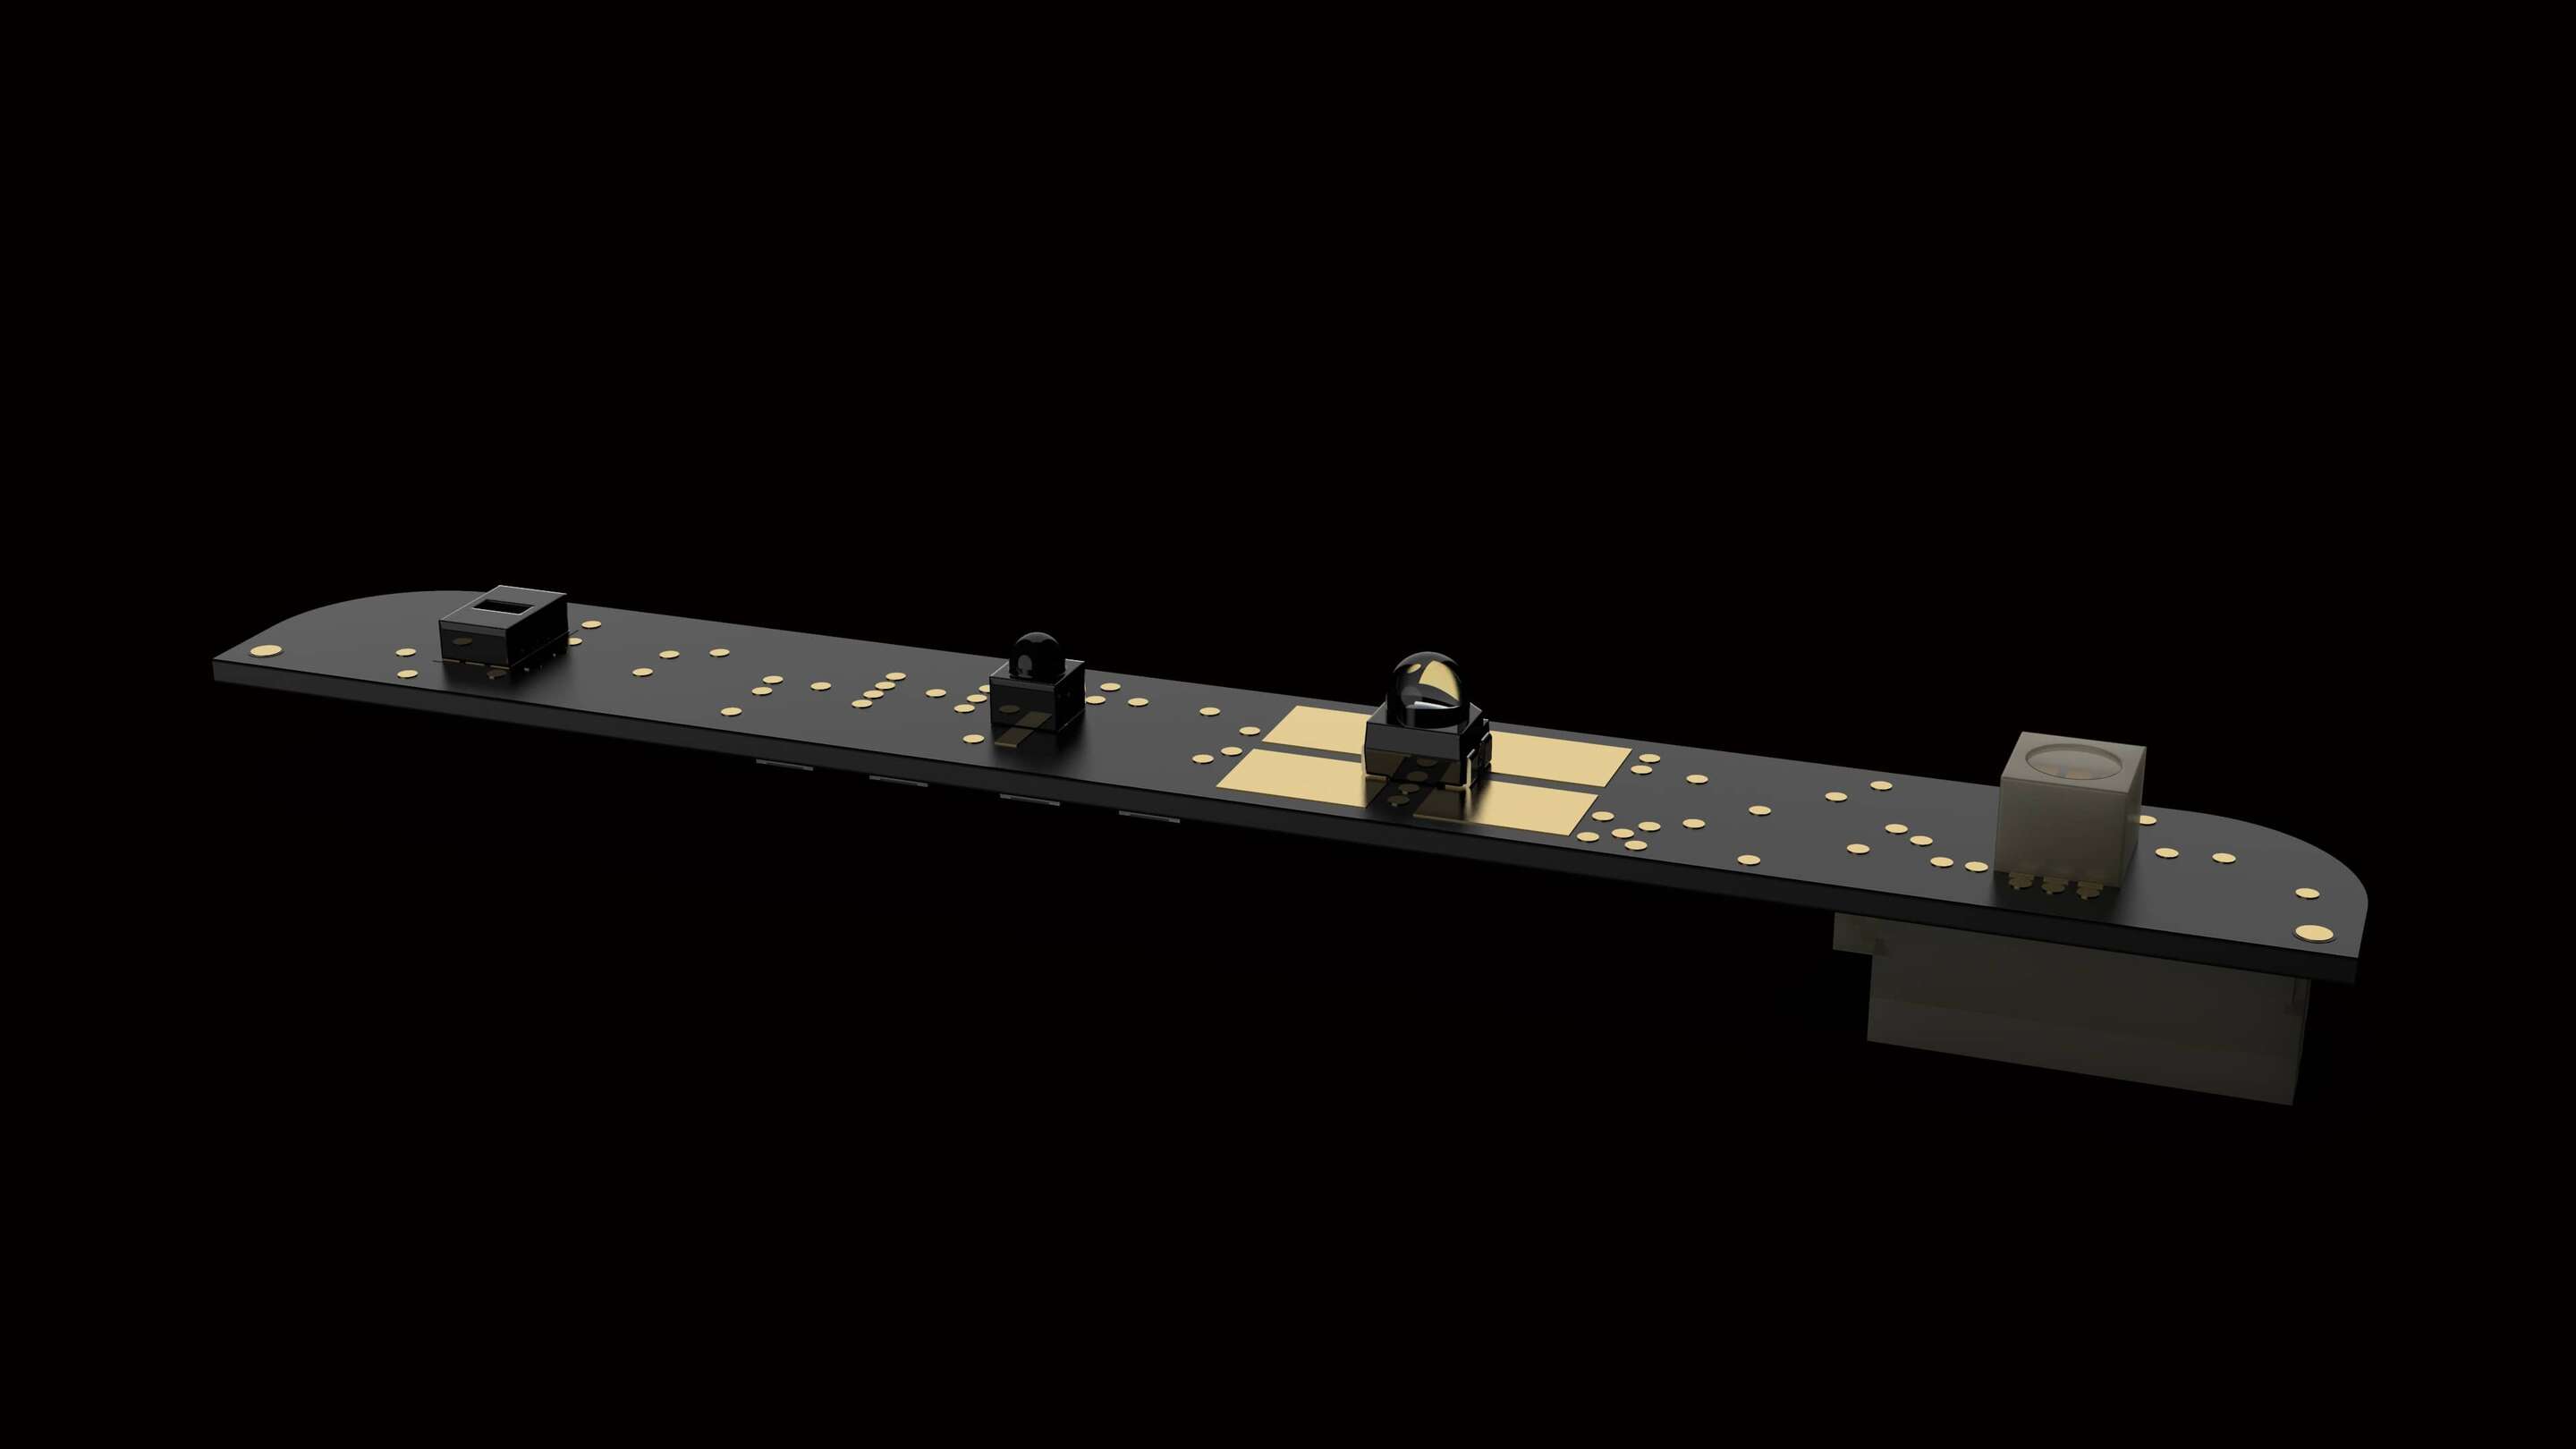 Industrijski monitor - senzorska palica, črni in zlati predmet s črnim ozadjem